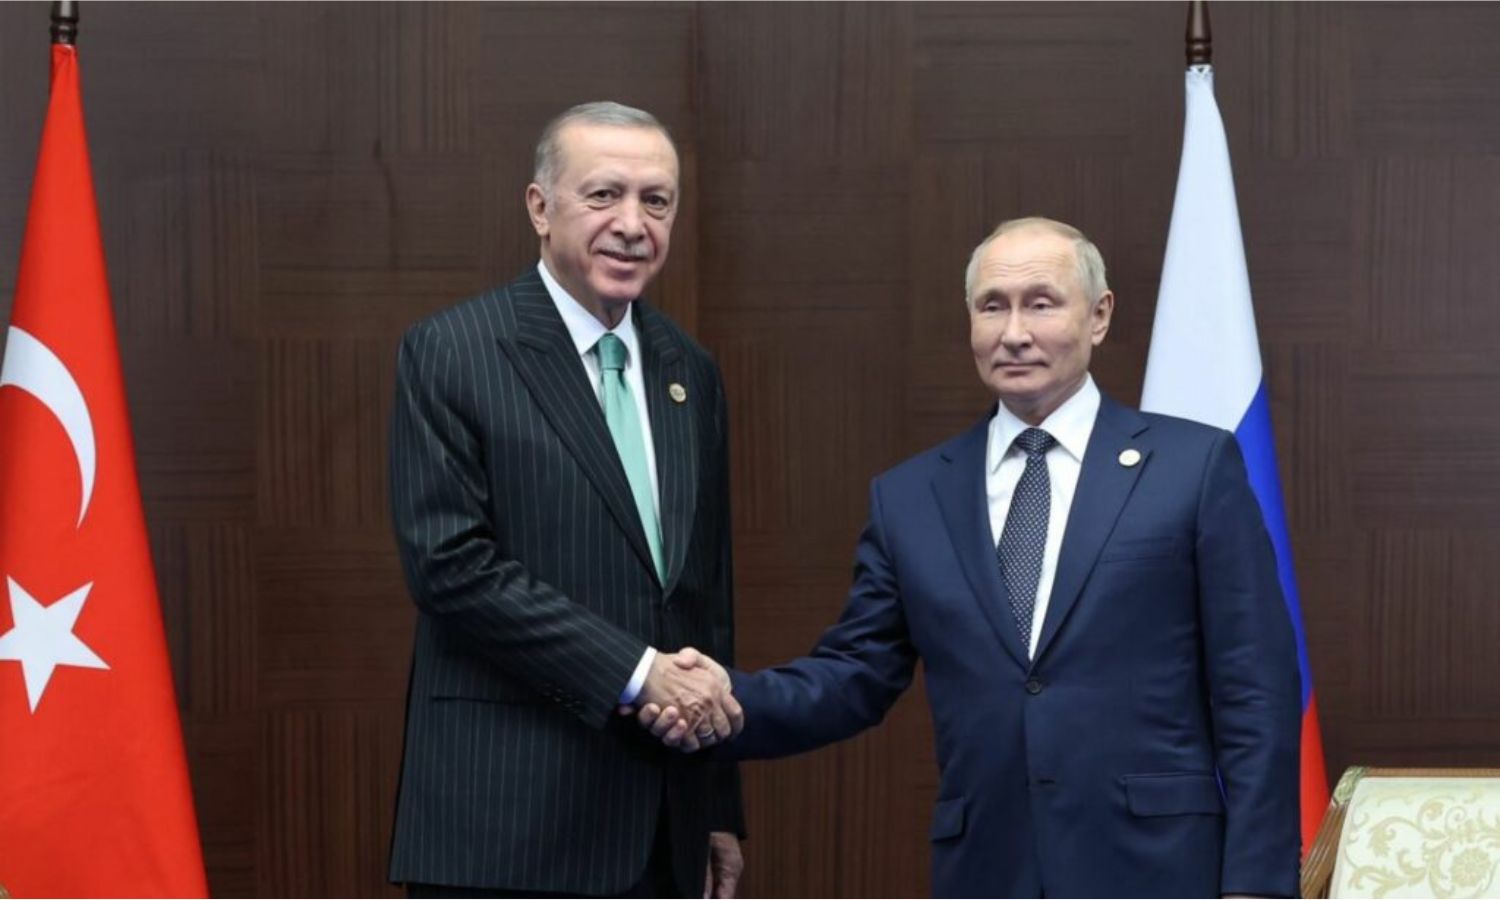 الرئيس الروسي، فلاديمير بوتين، يصافح الرئيس التركي، رجب طيب أردوغان، خلال لقائهما في أستانة- 13 من تشرين الأول 2022 (الرئاسة التركية/ تويتر)